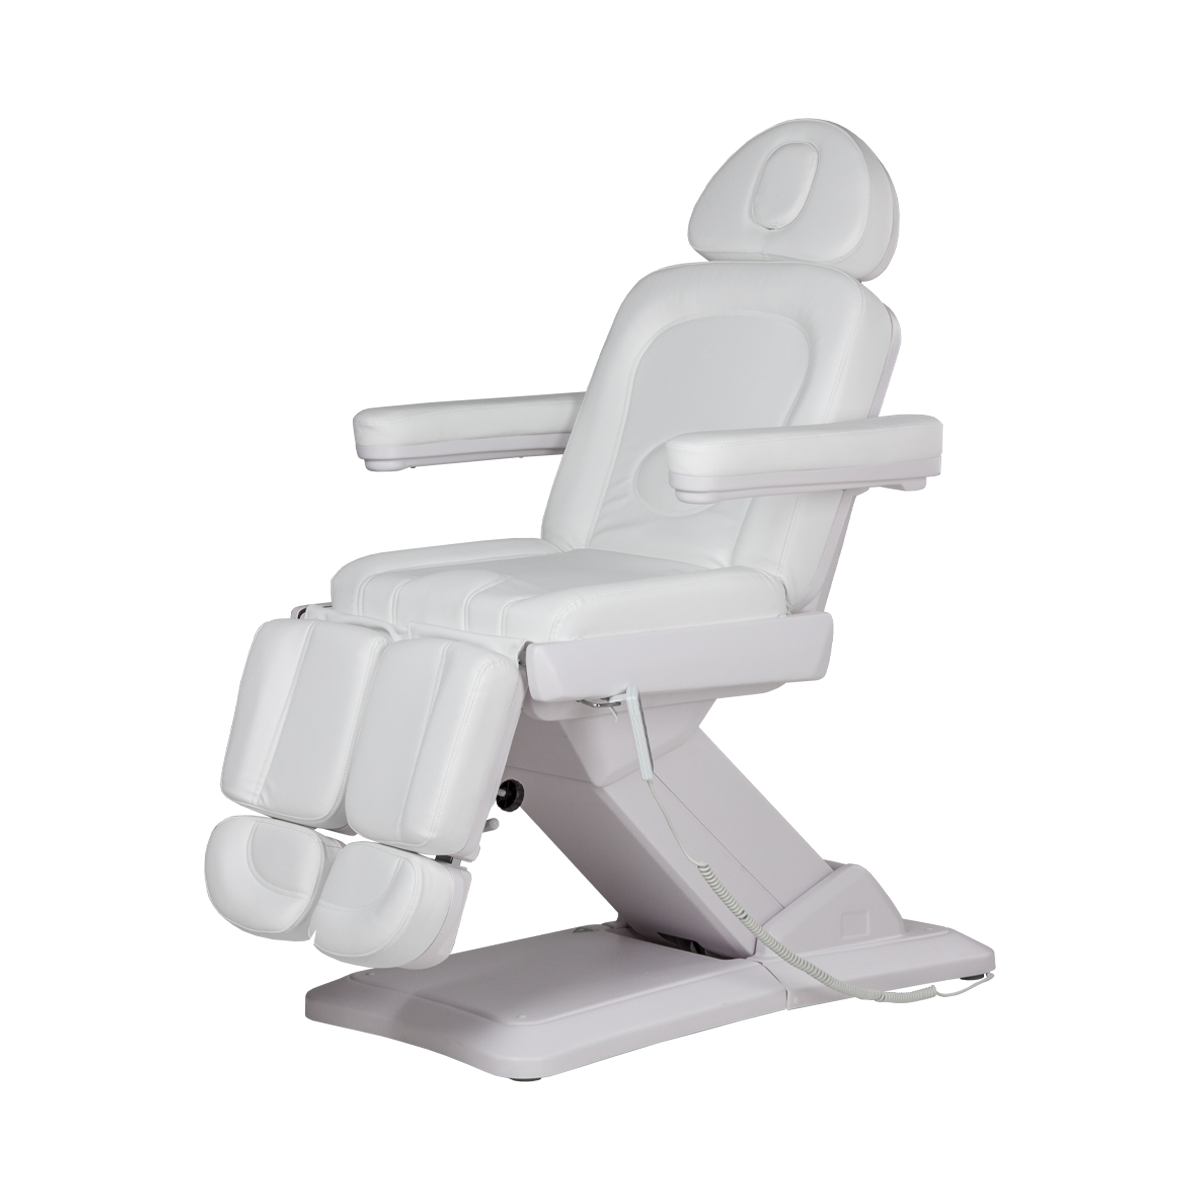 Педикюрное кресло МД-848-3А, 3 мотора - 4 